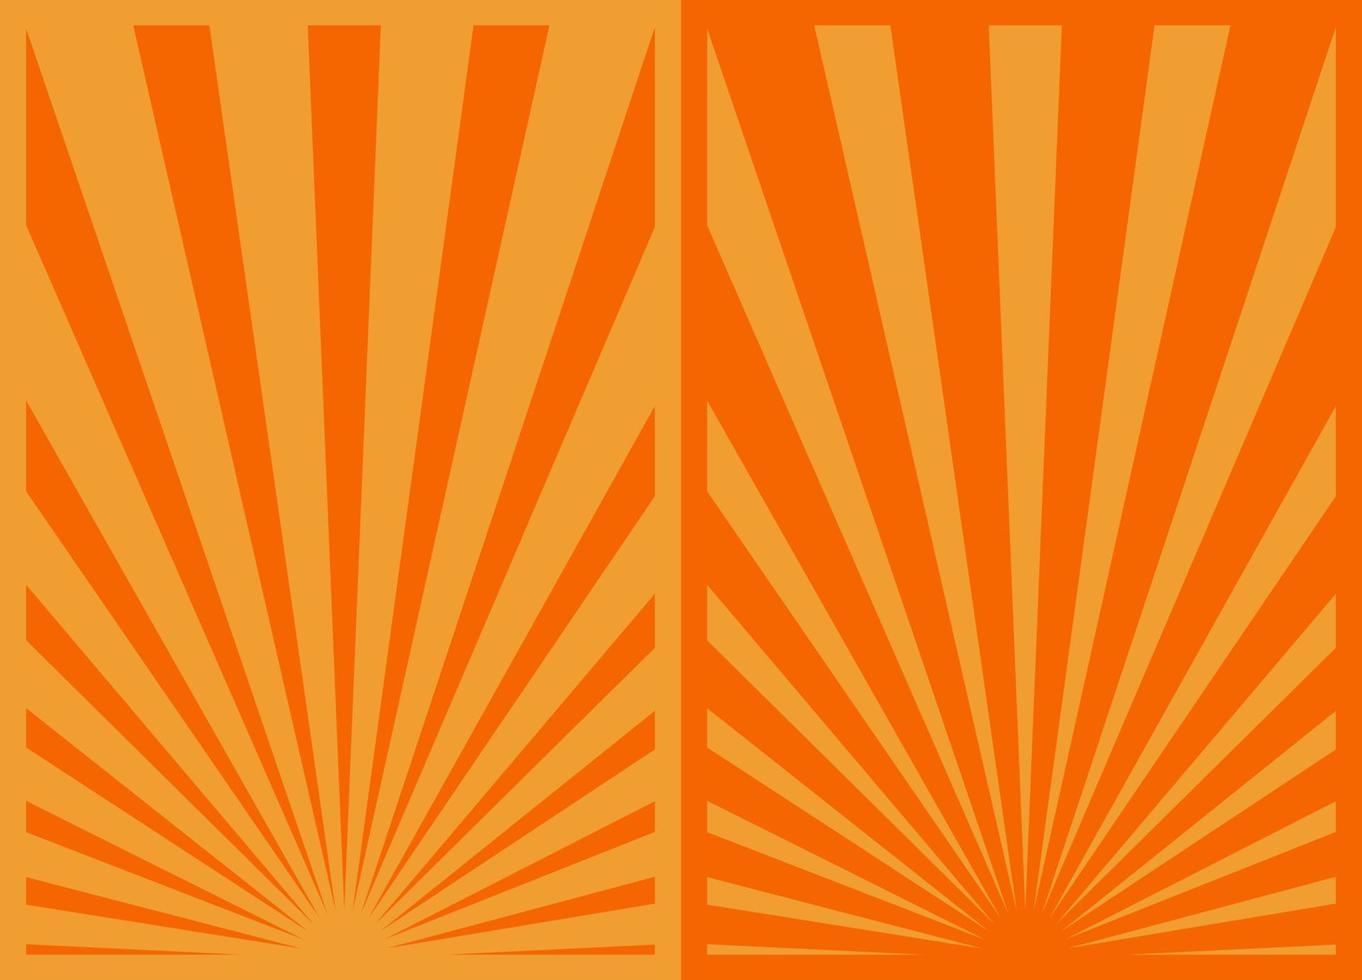 årgång orange sunburst Ränder affisch uppsättning, mall med strålar centrerad på de botten, retro inspirerad tecknad serie vertikal affischer. vektor